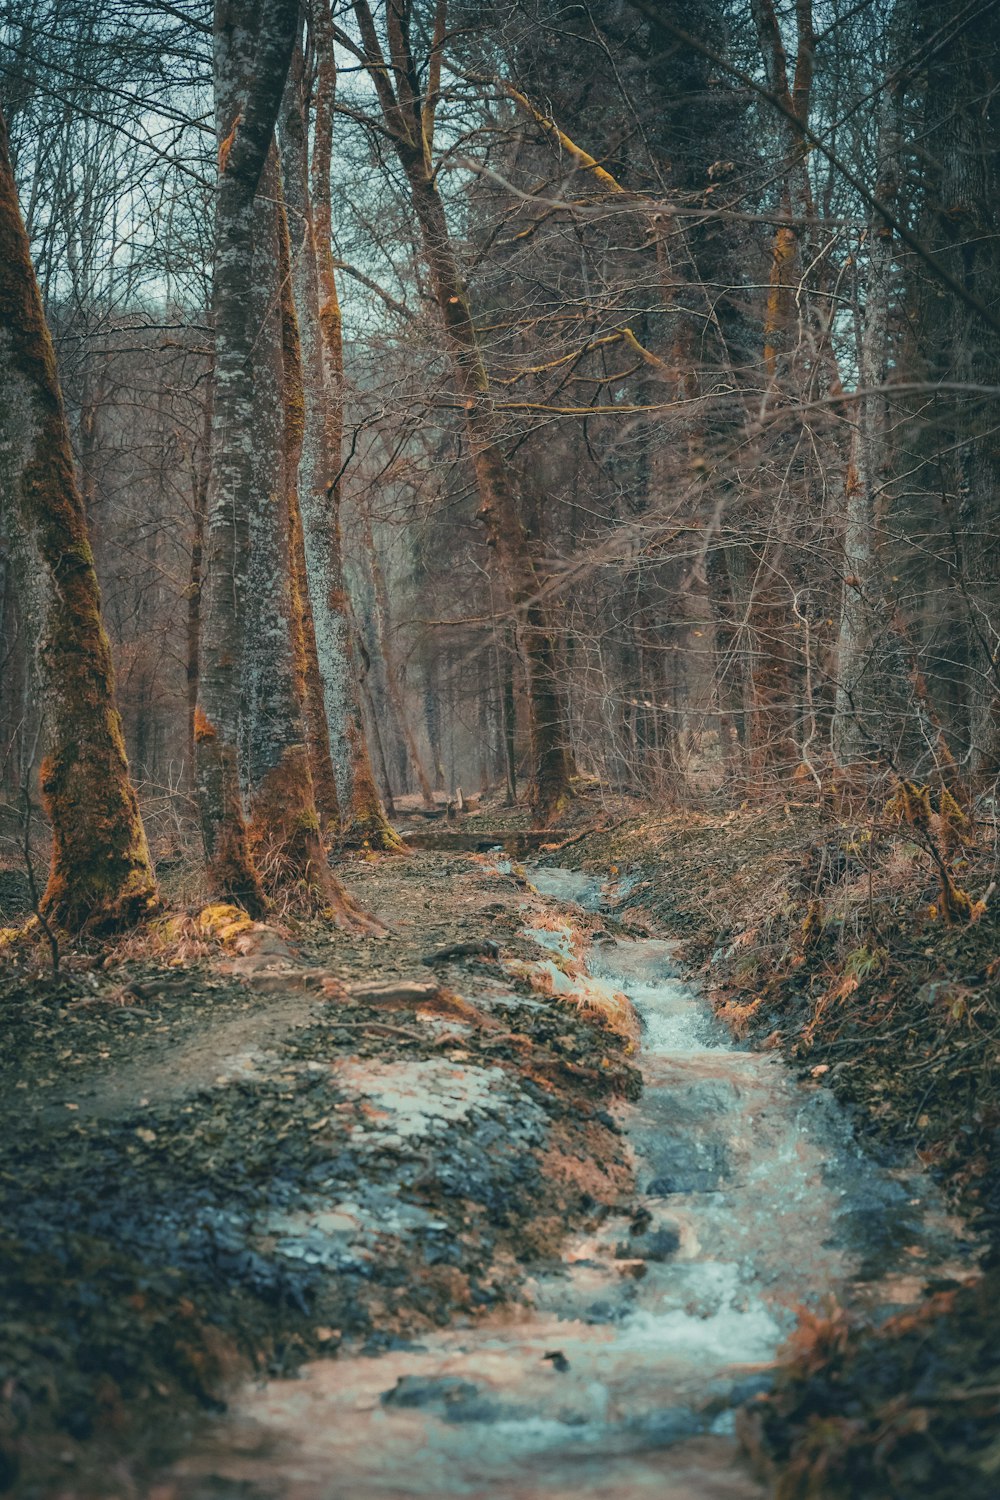 un ruisseau traversant une forêt remplie d’arbres